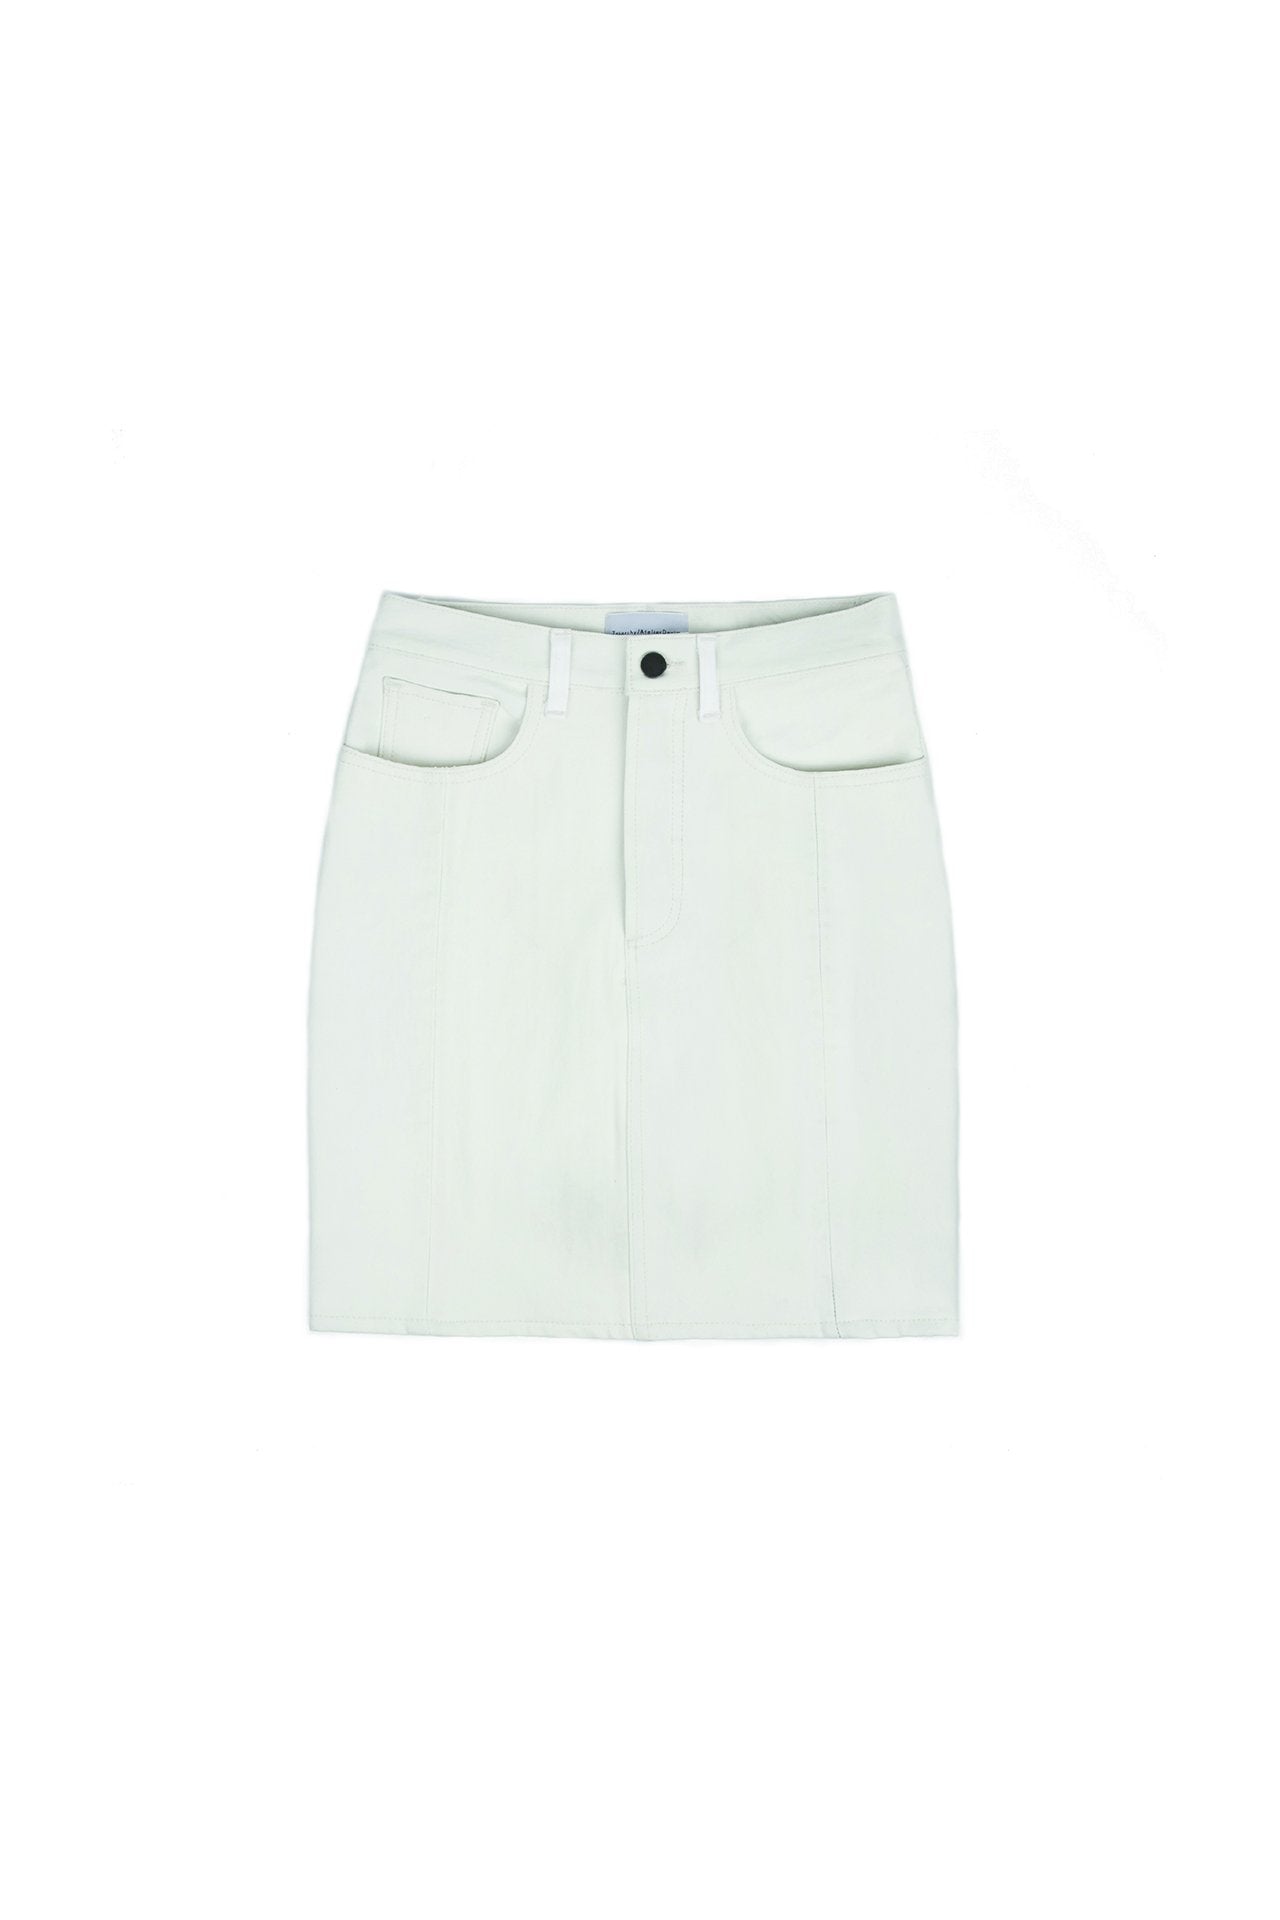 White Vintage Denim Skirt